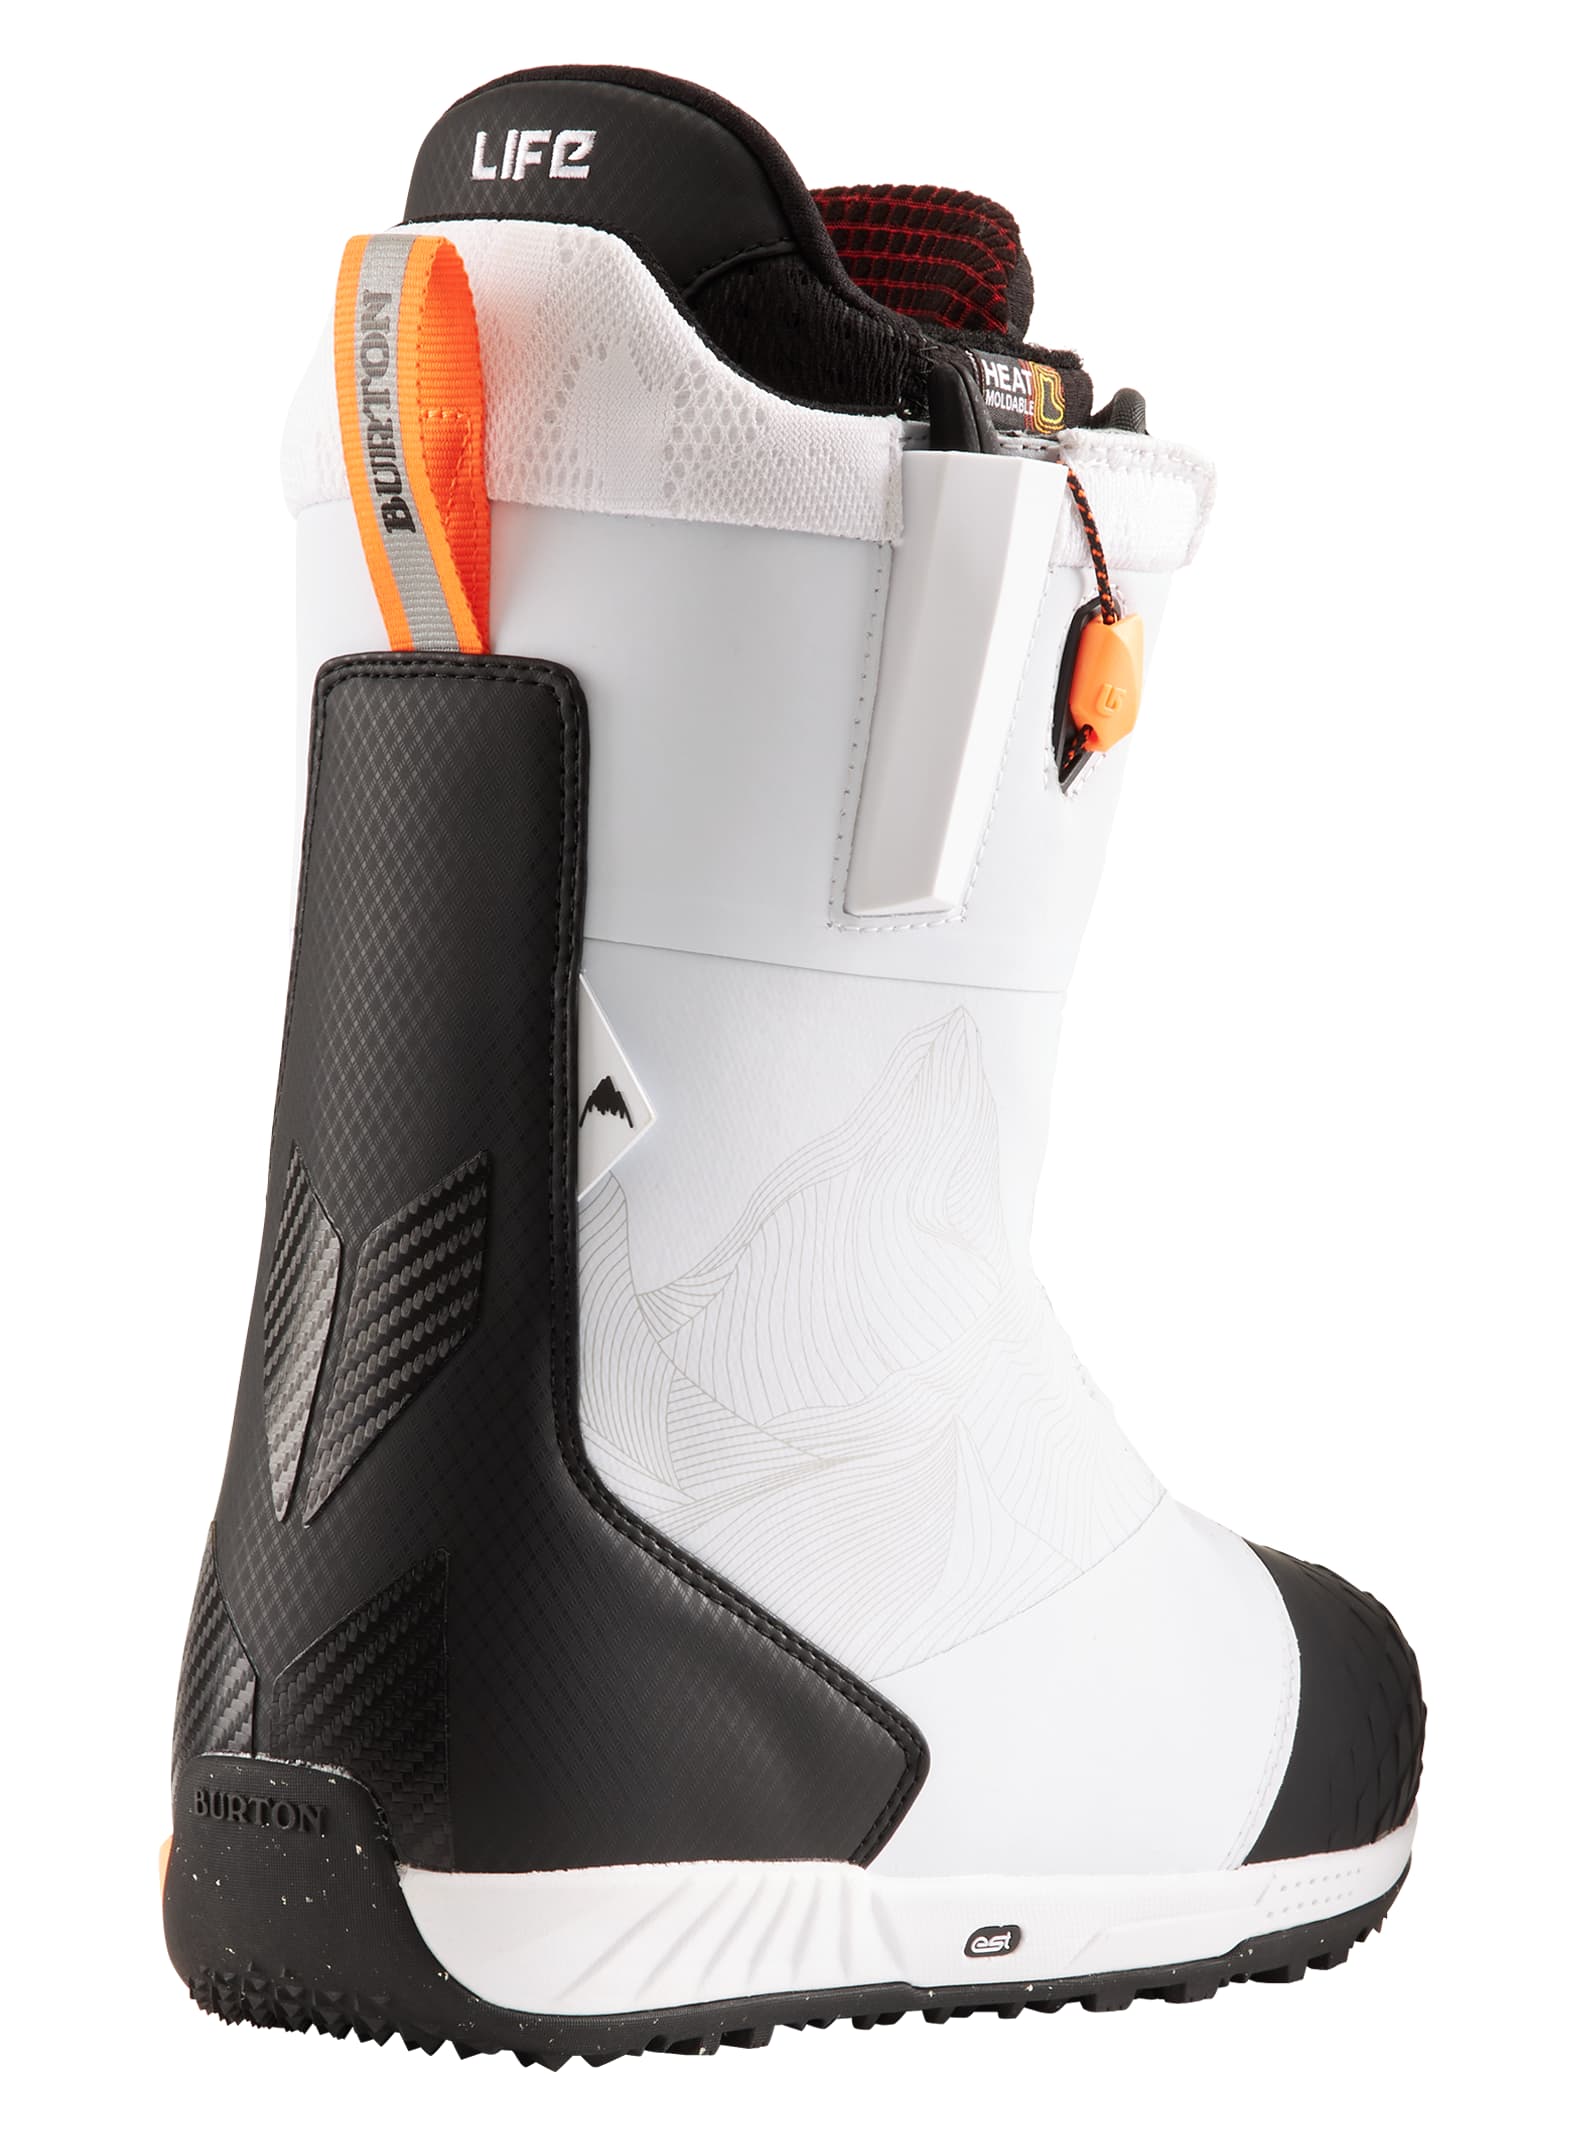 Details about   Burton Ion Snowboard Boots Men's Size 9.5 